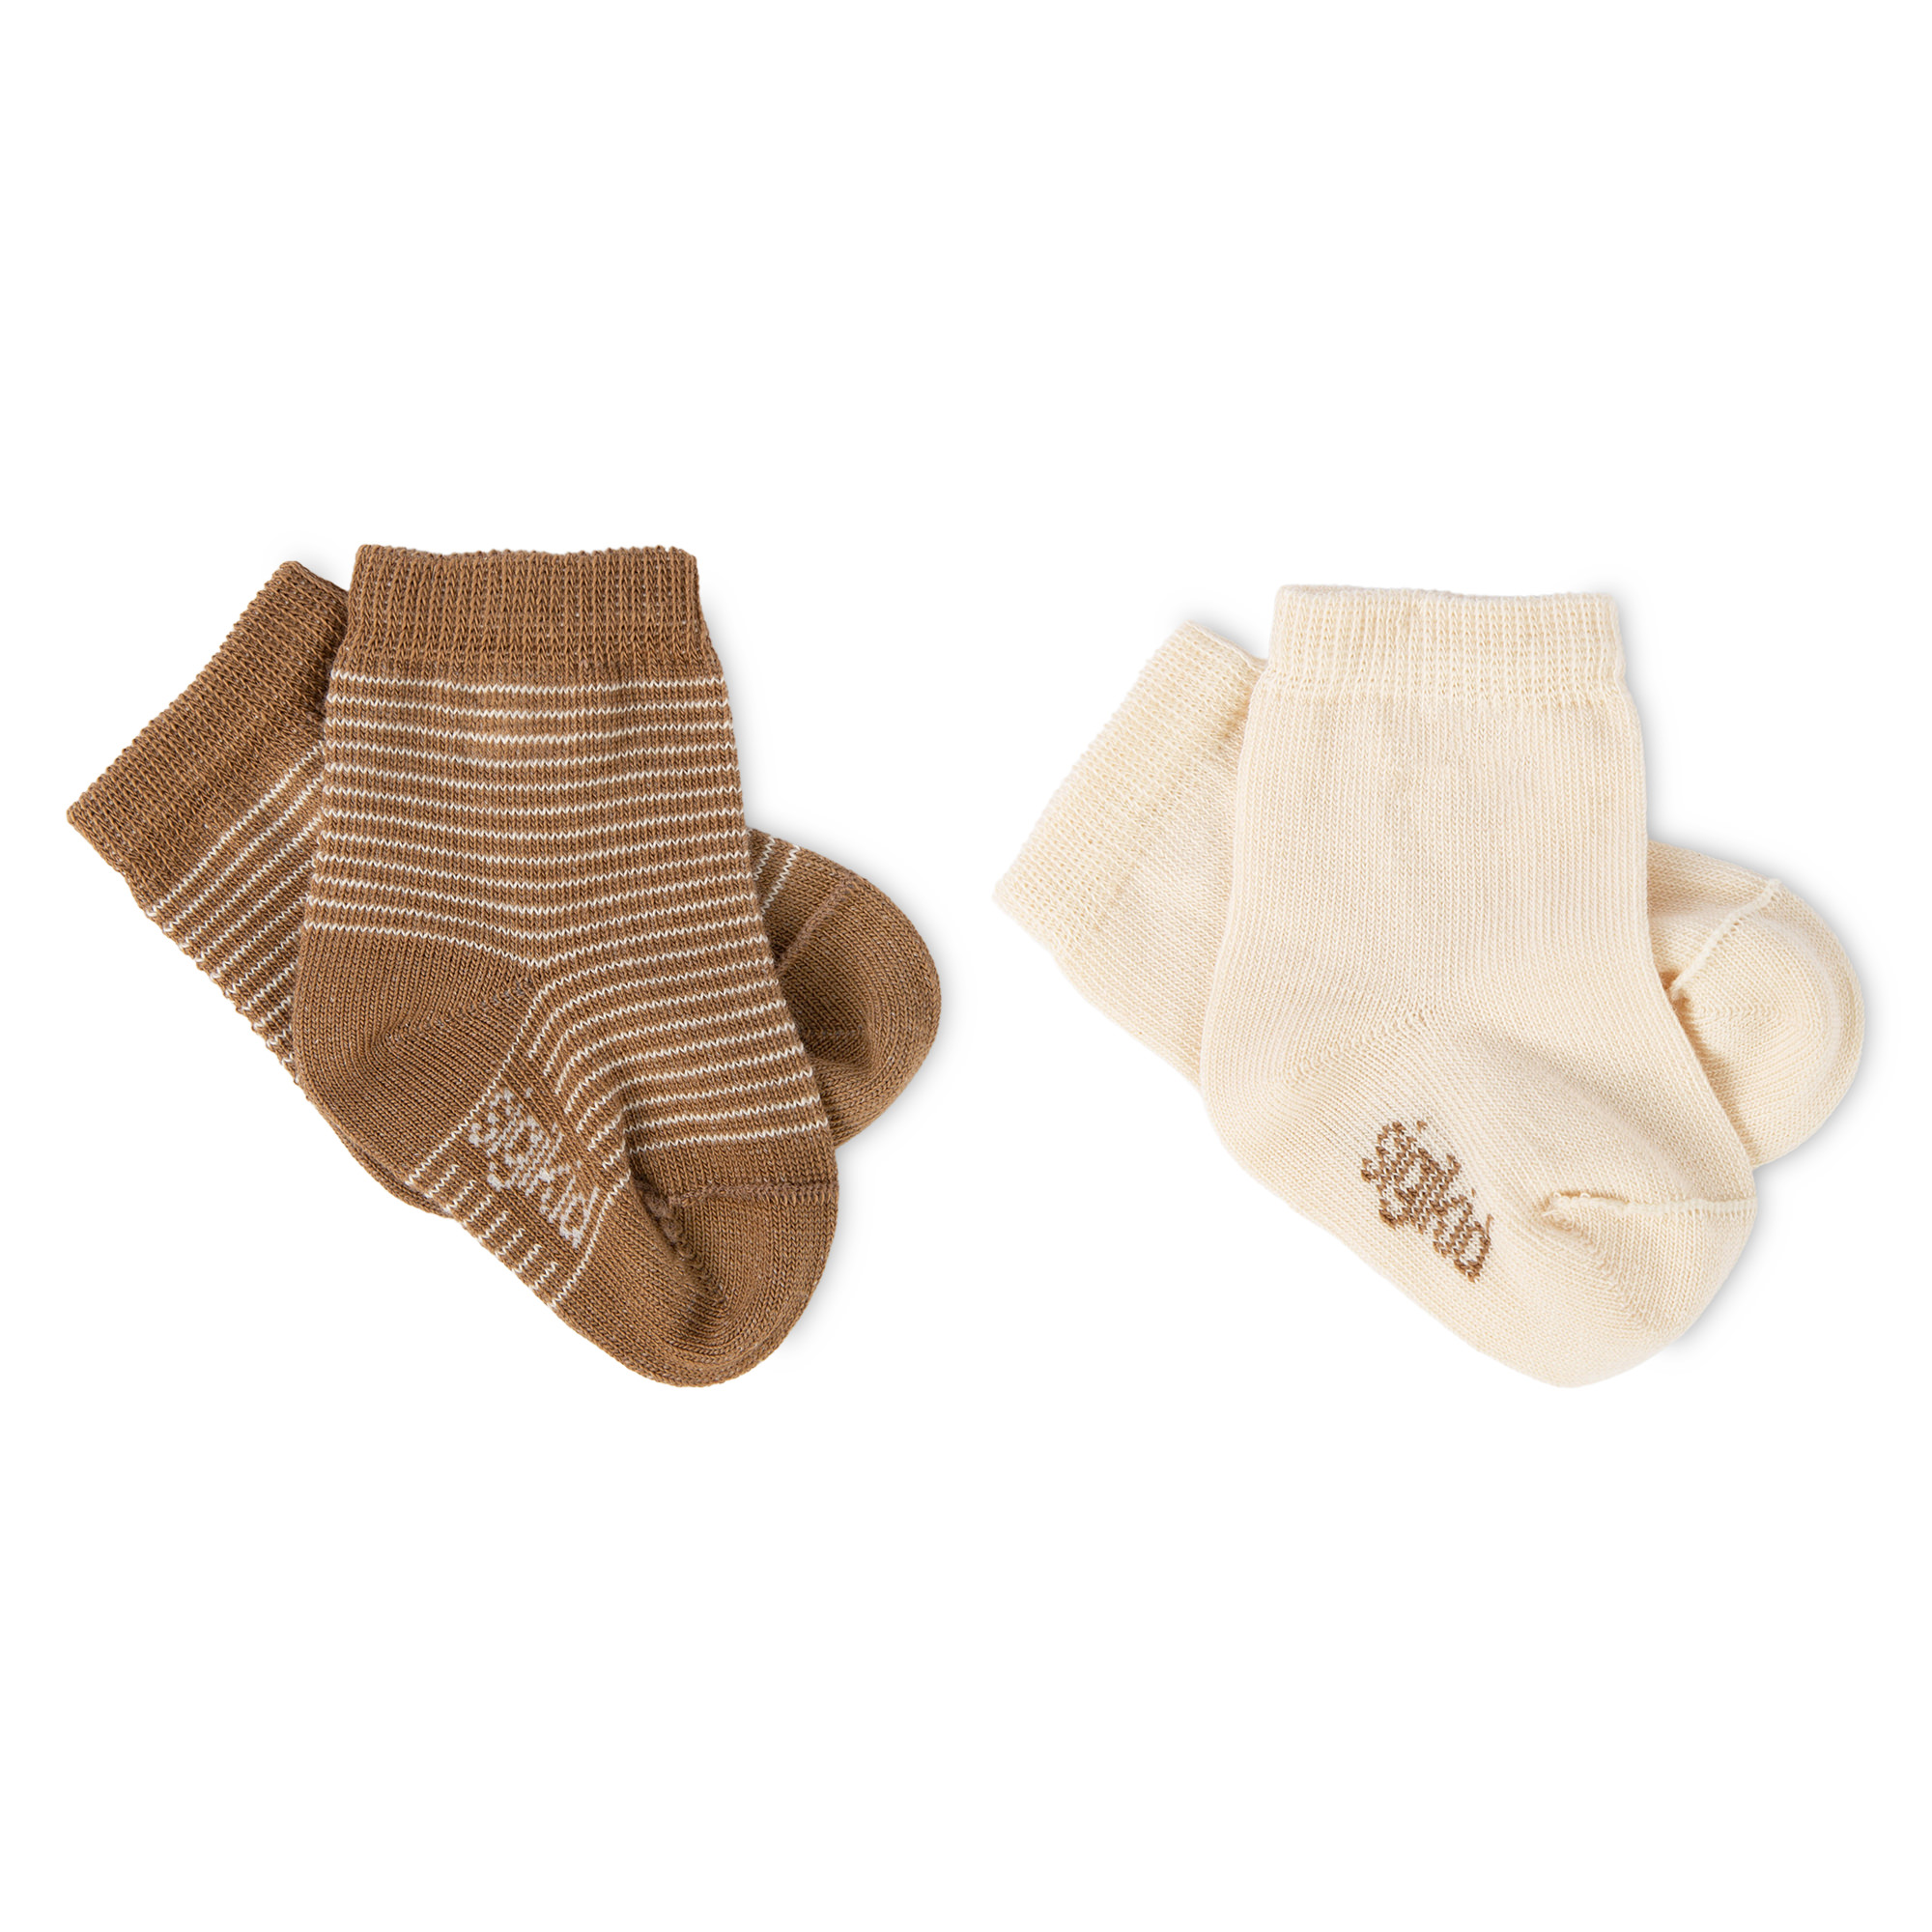 Baby Socken im 2er-Set, beige/beige geringelt